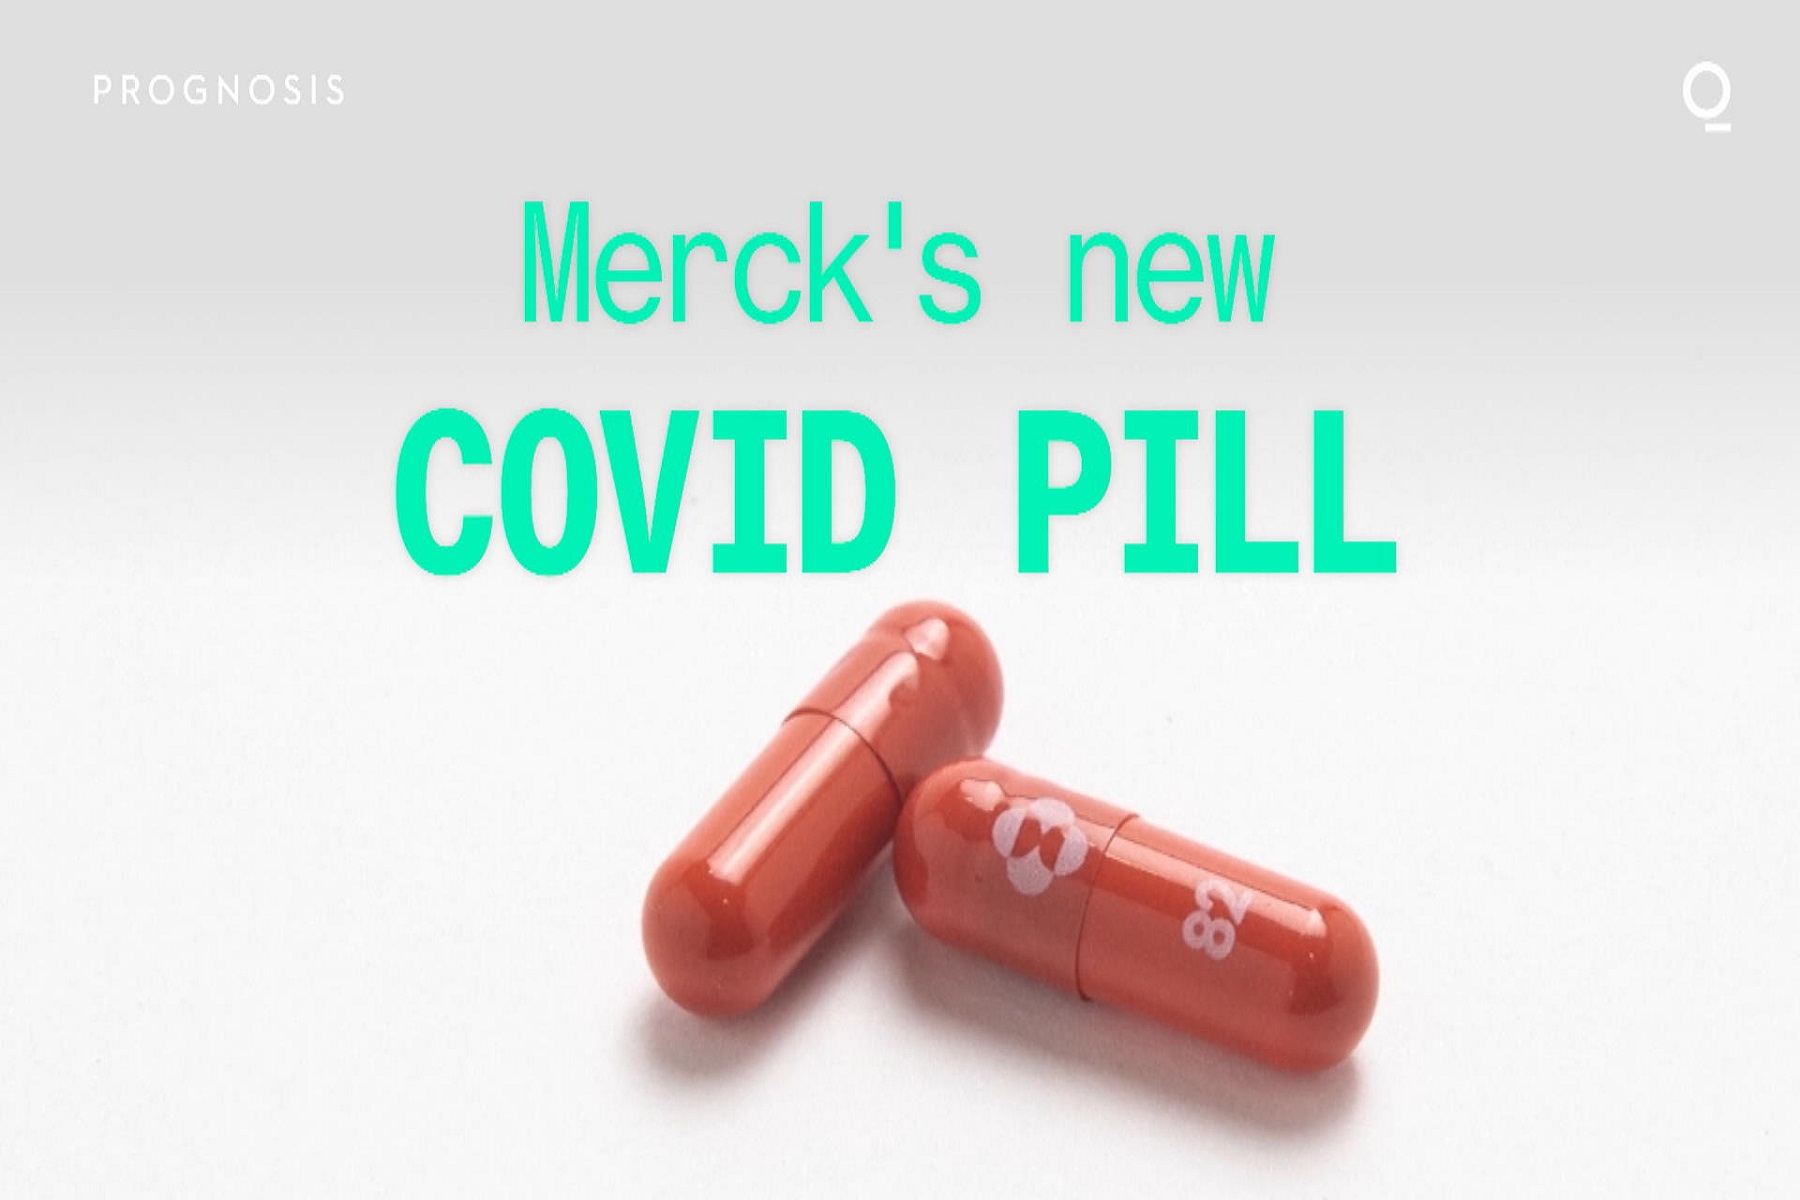 Φαρμακευτική Merck: Ζητά από τον FDA να εγκρίνει το χάπι κατά της COVID για επείγουσα χρήση